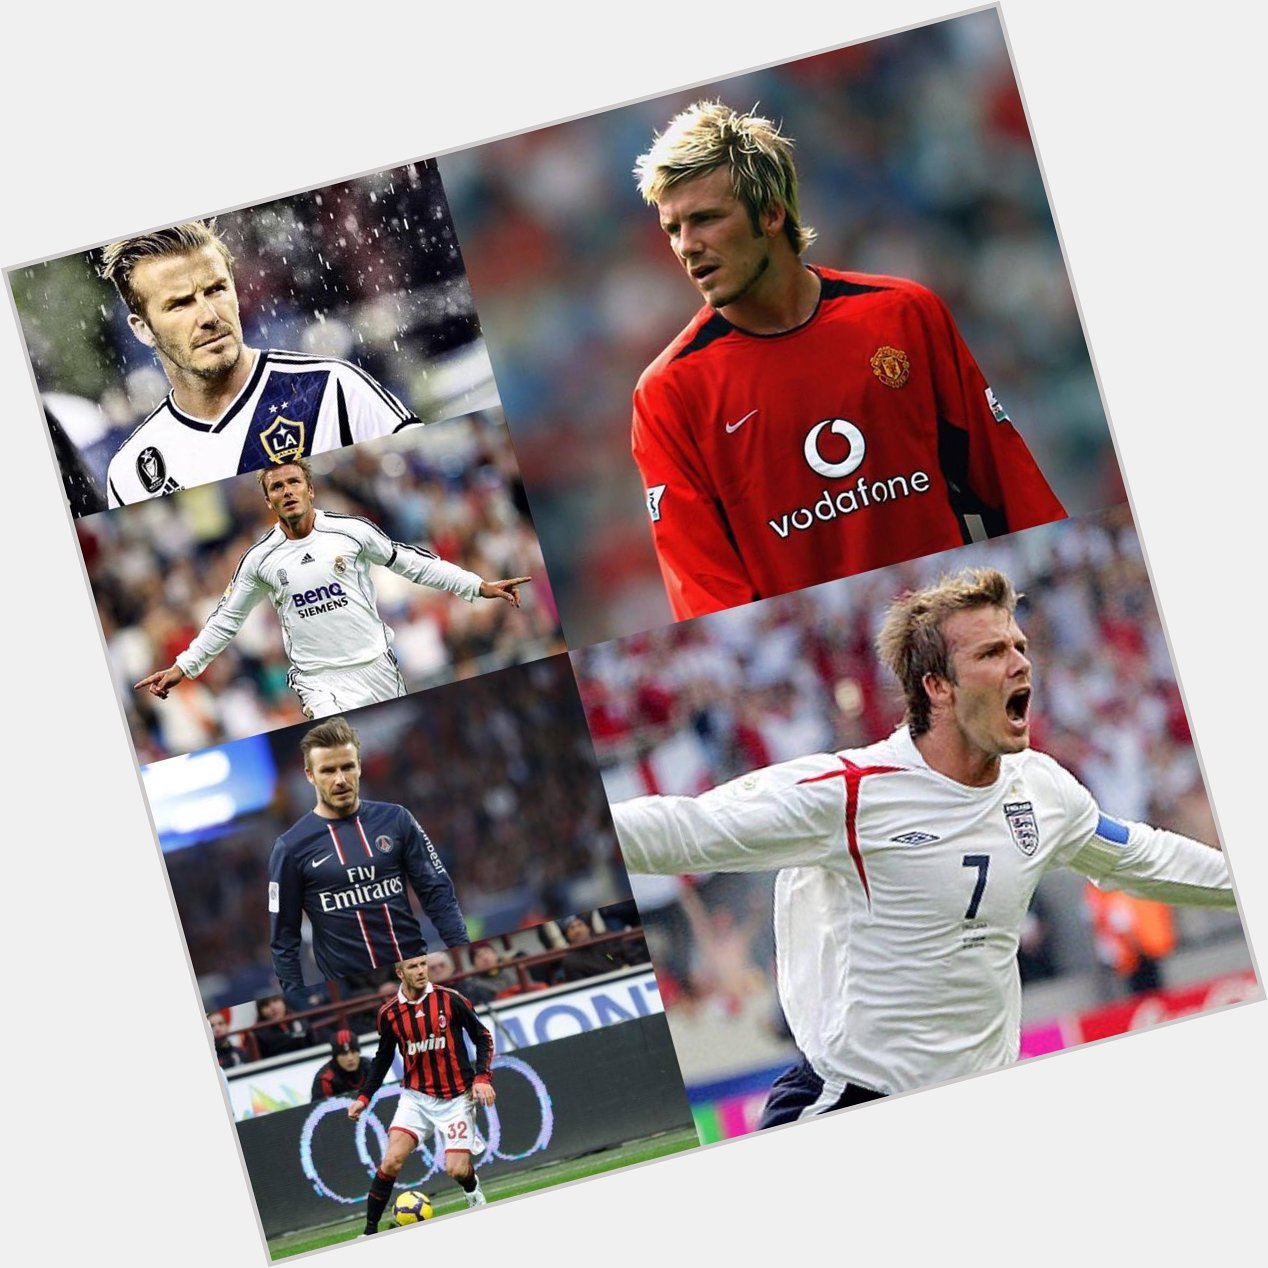 Happy Birthday David Beckham.

PL      FA Cup  Champions League La Liga MLS Cup  Ligue 1 65 fk goals   